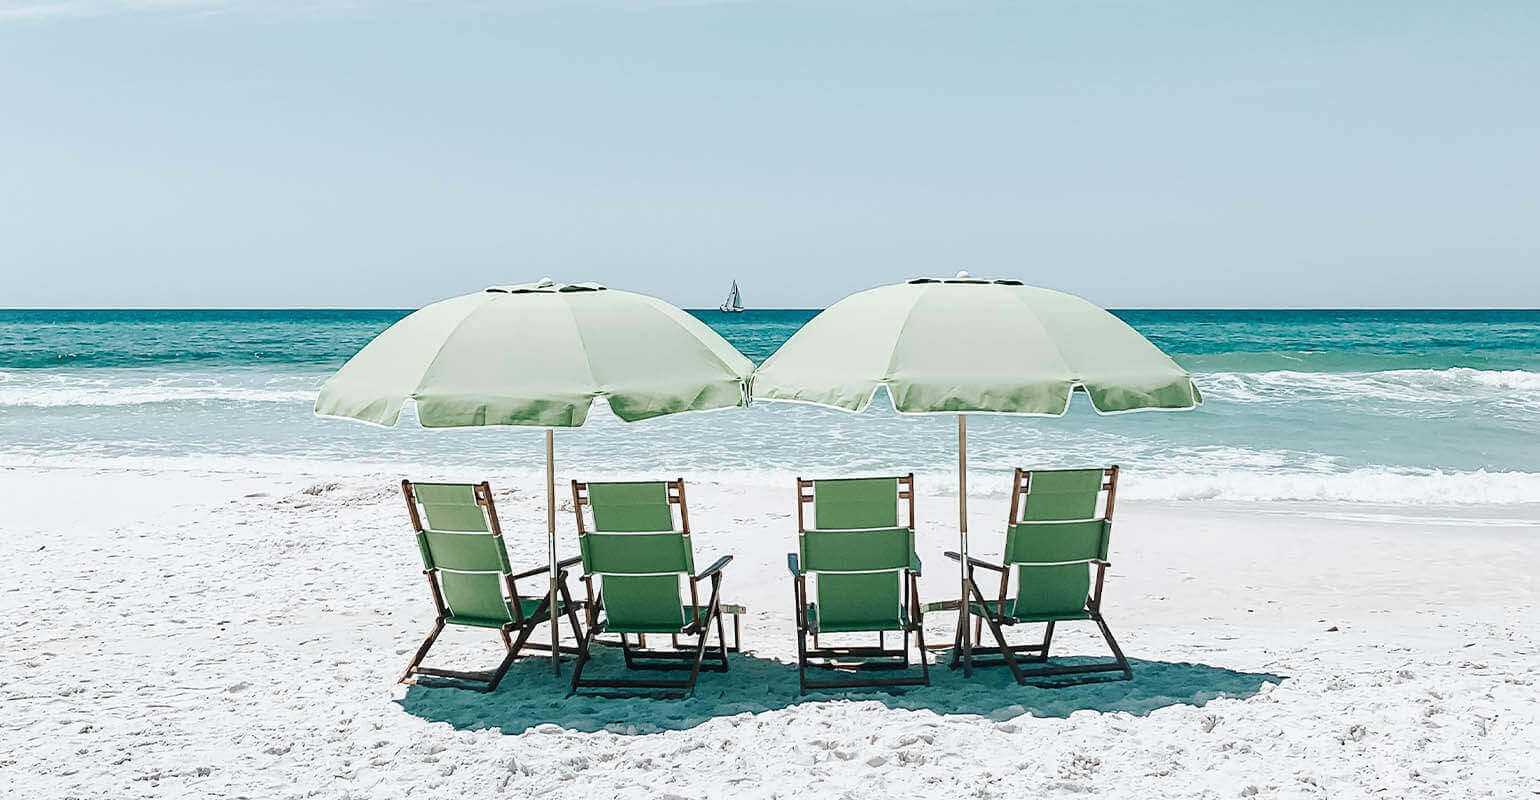 ビーチの砂浜に置かれた傘の下の緑色の椅子の鮮明な写真